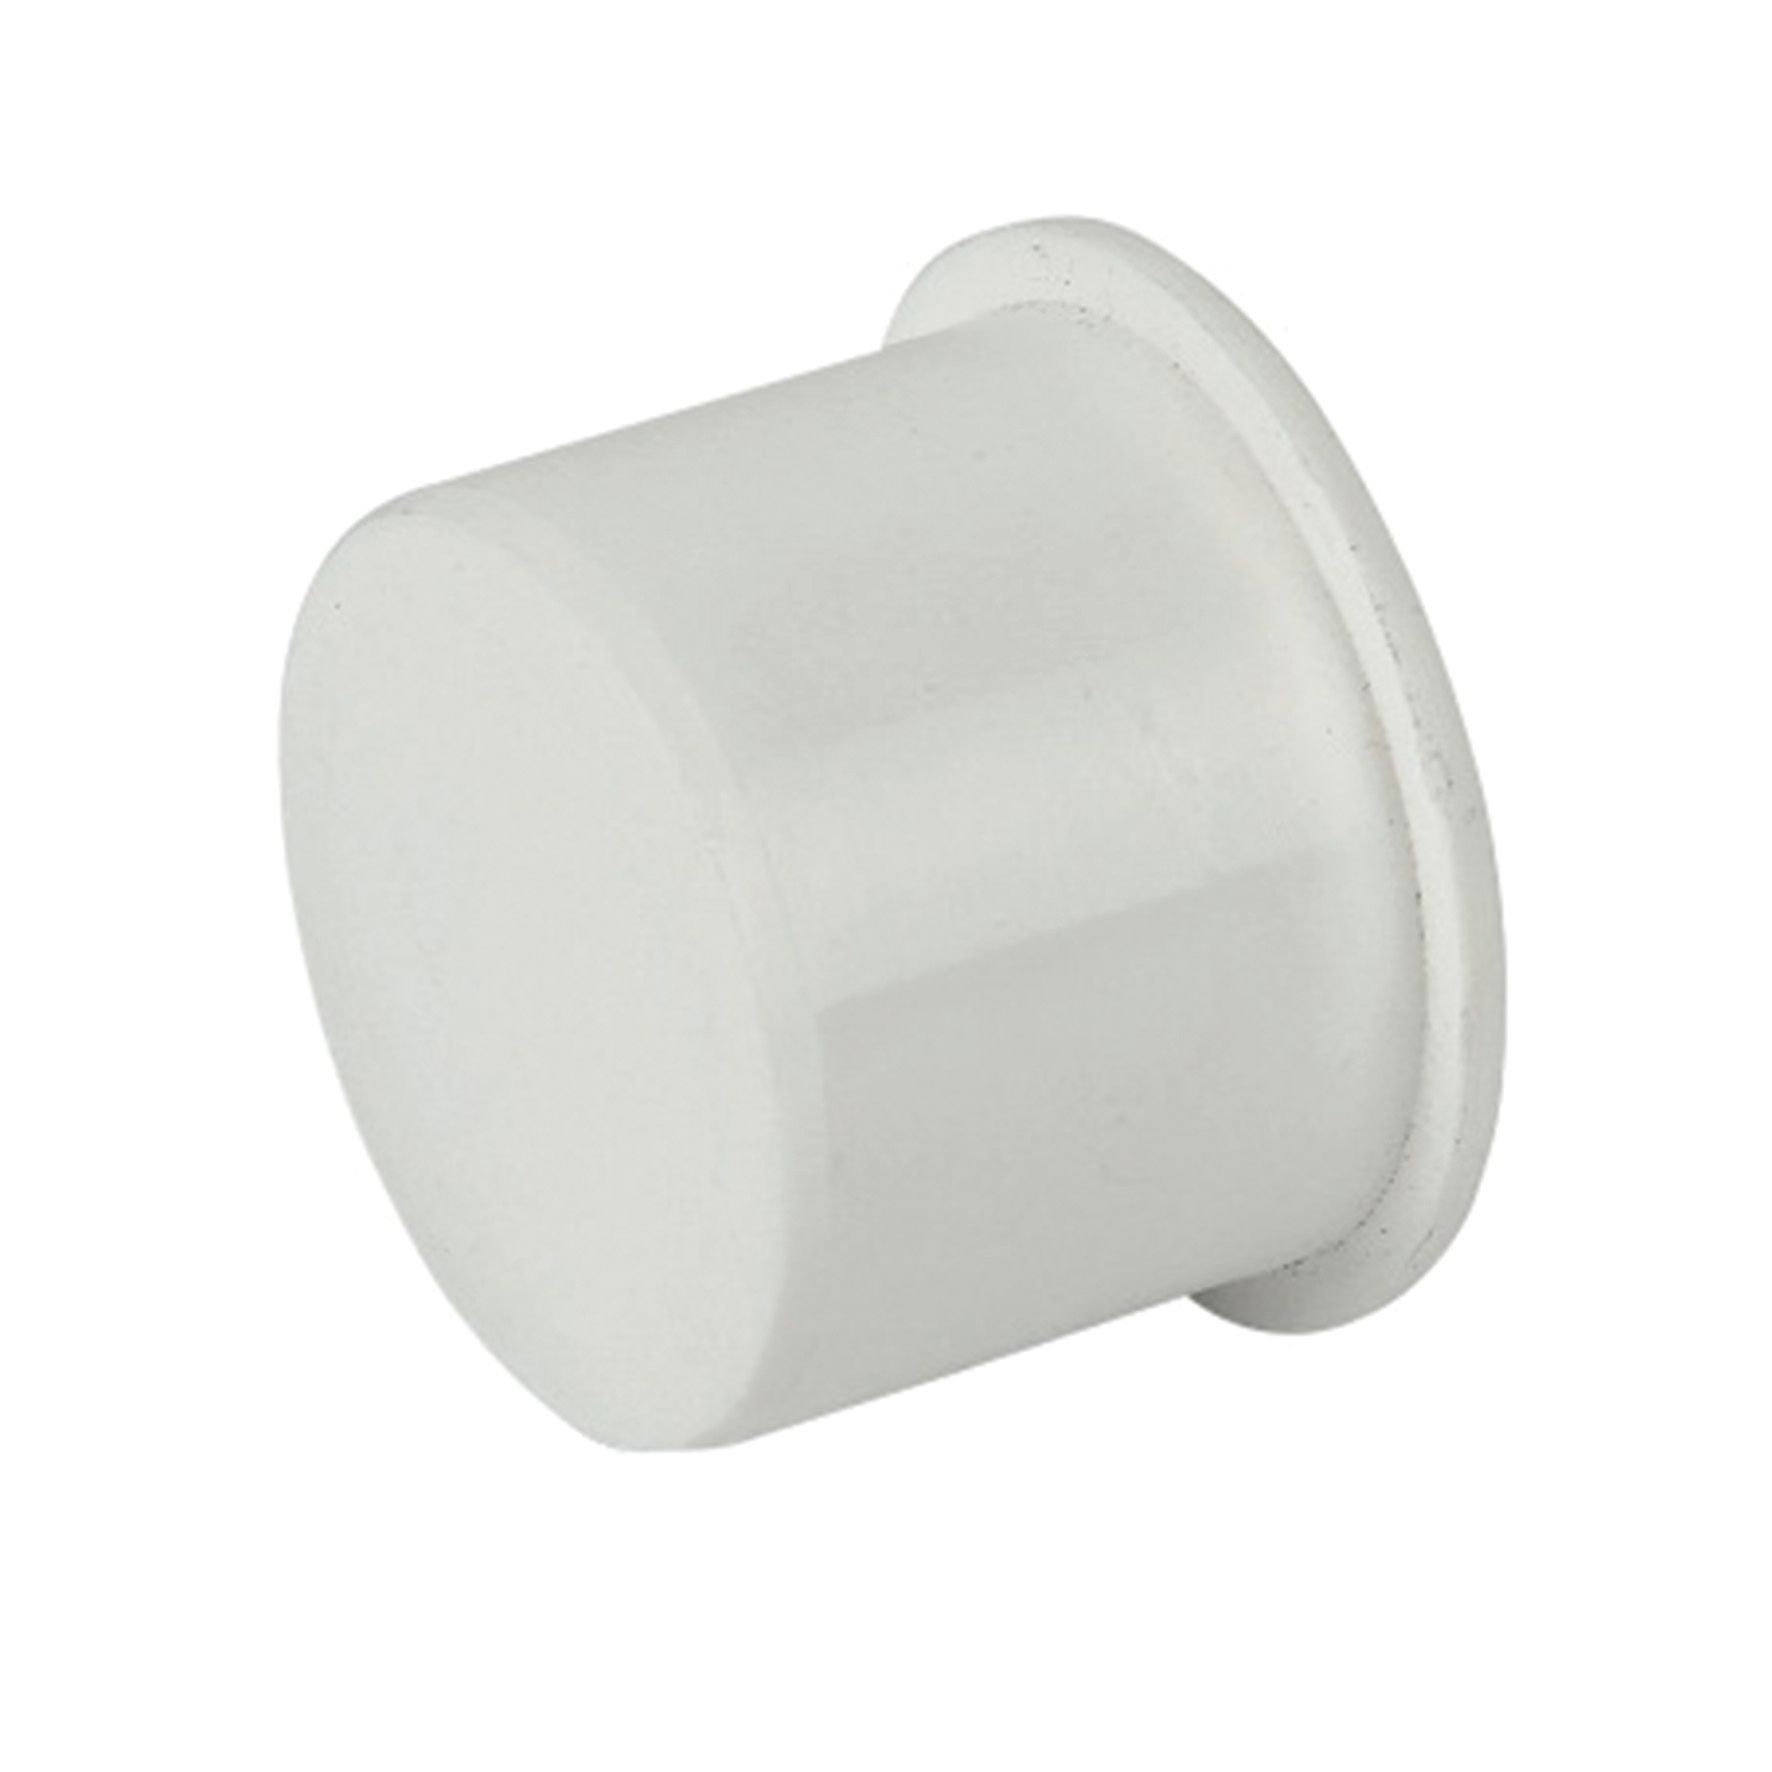 Image of FloPlast WP30W Push-Fit Waste Socket Plug - White 32mm